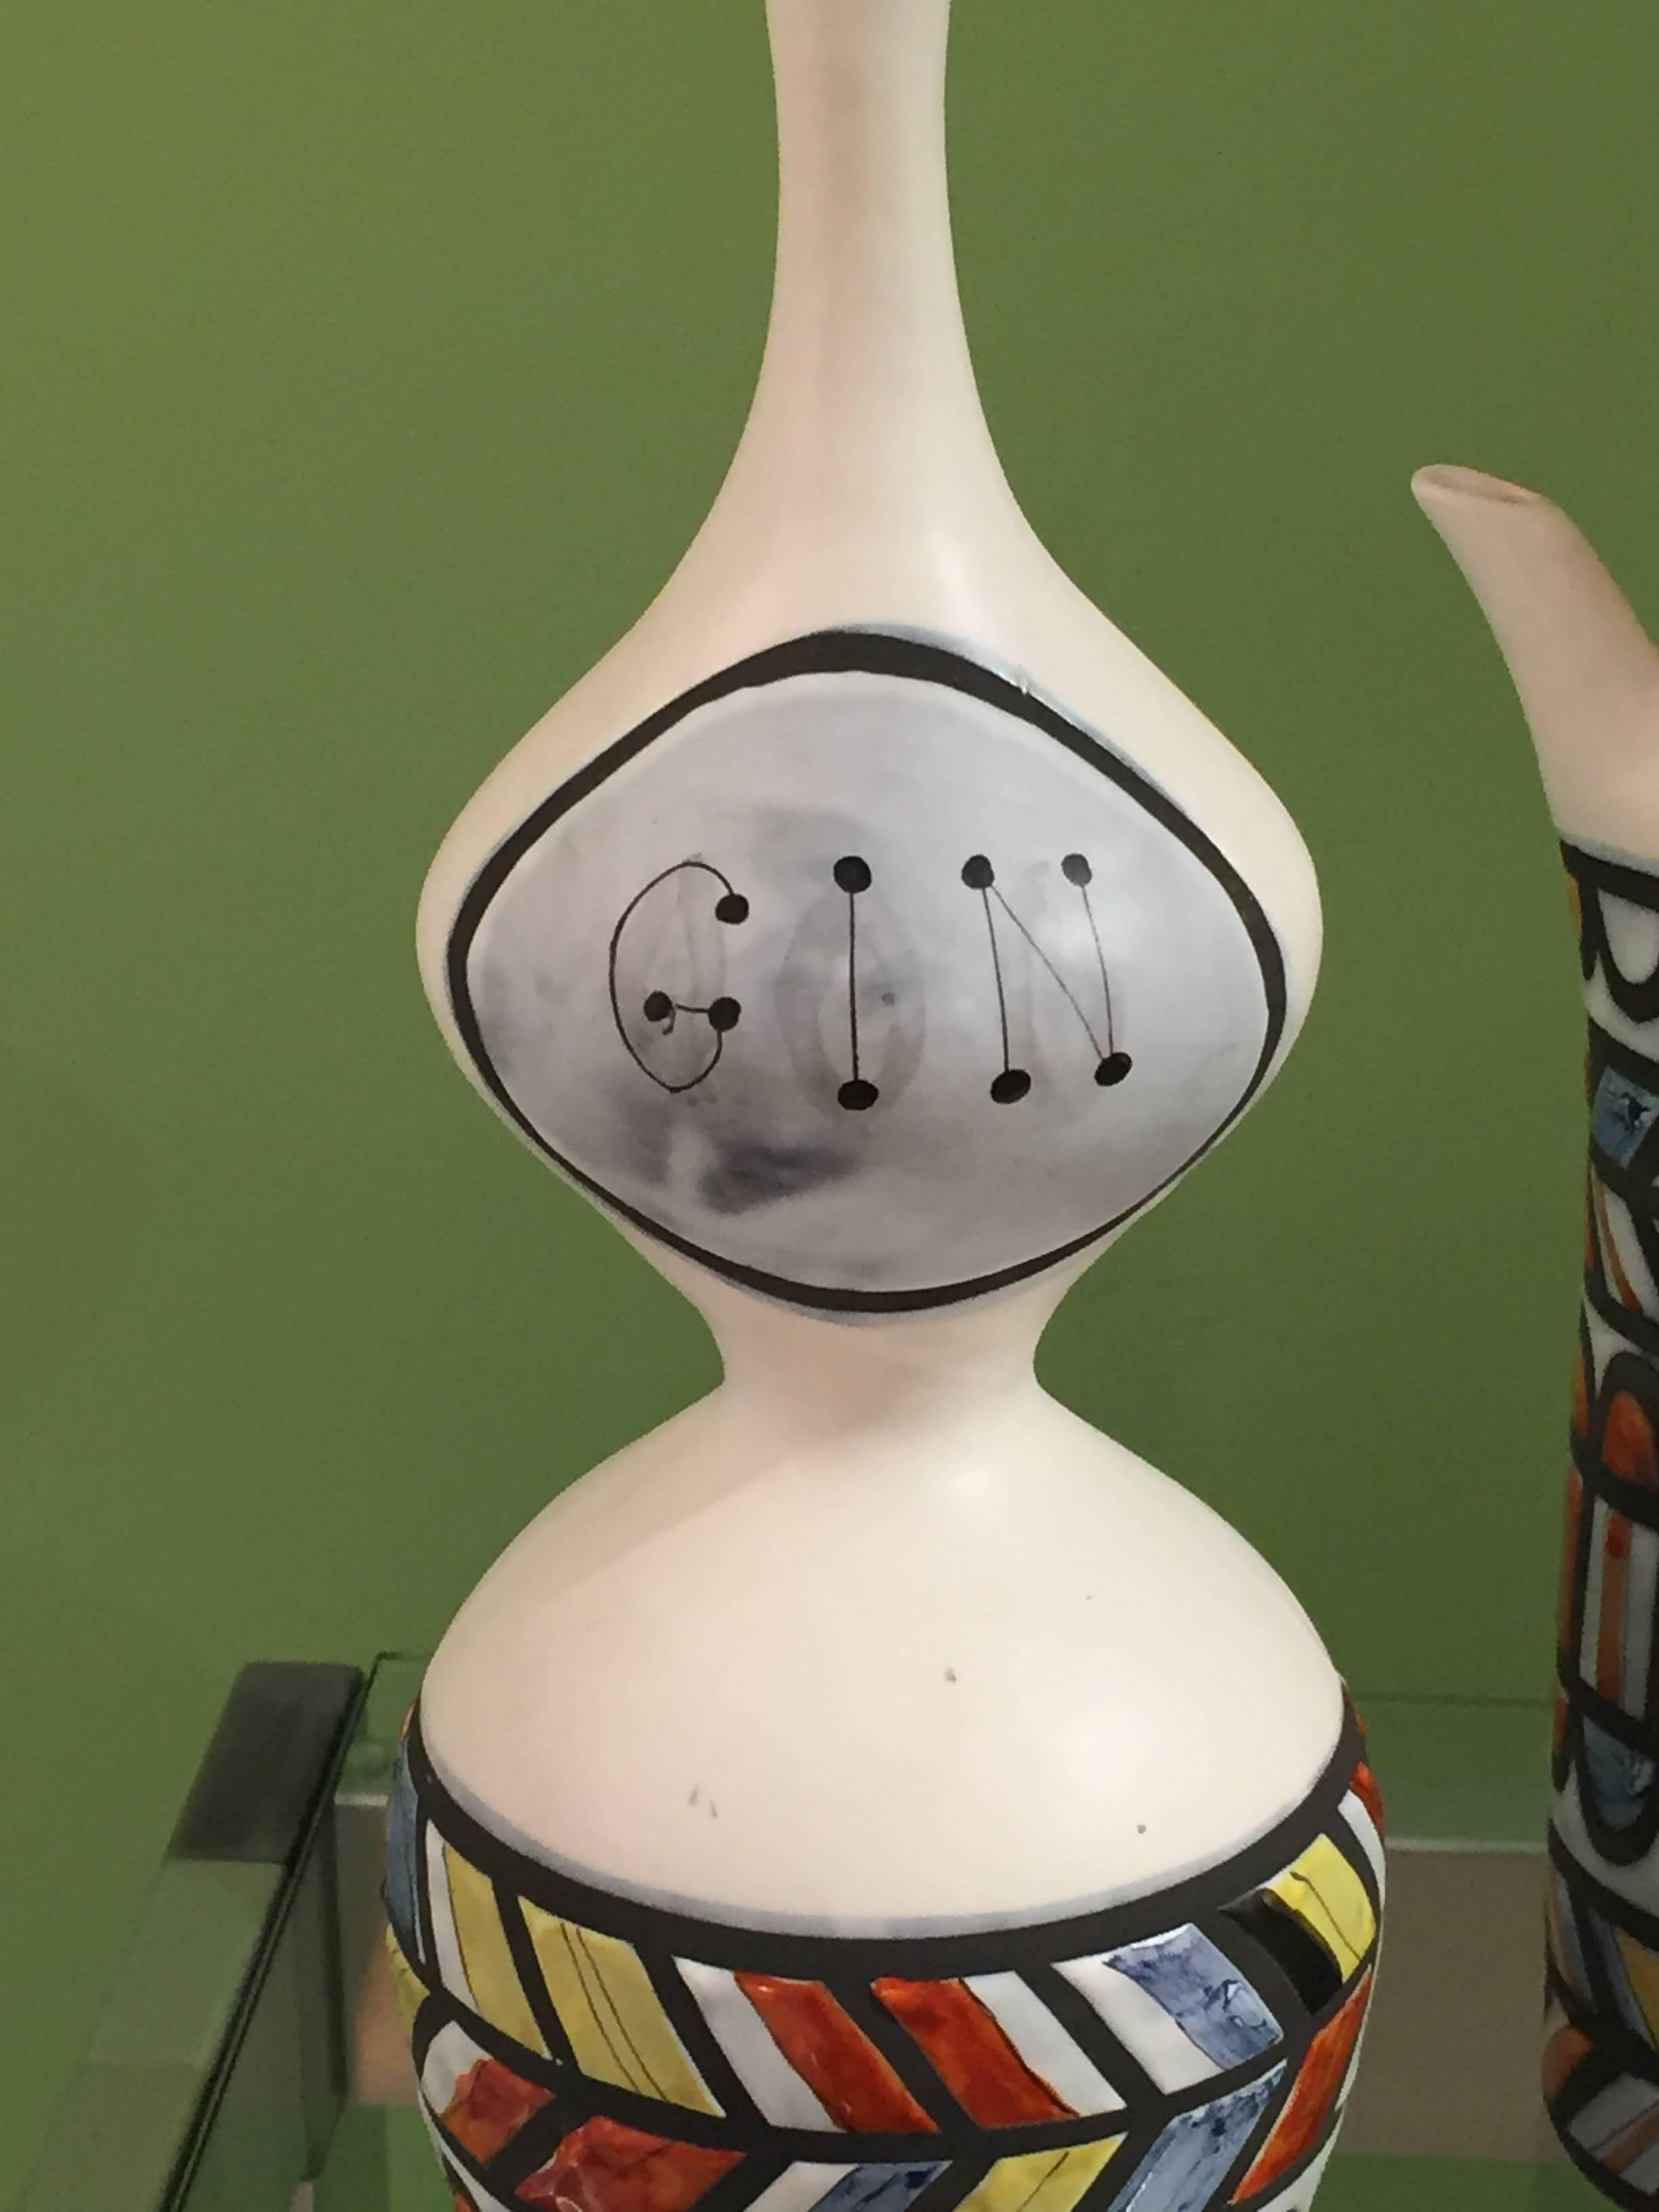 Vintage ceramic pitchers/decorative objects.